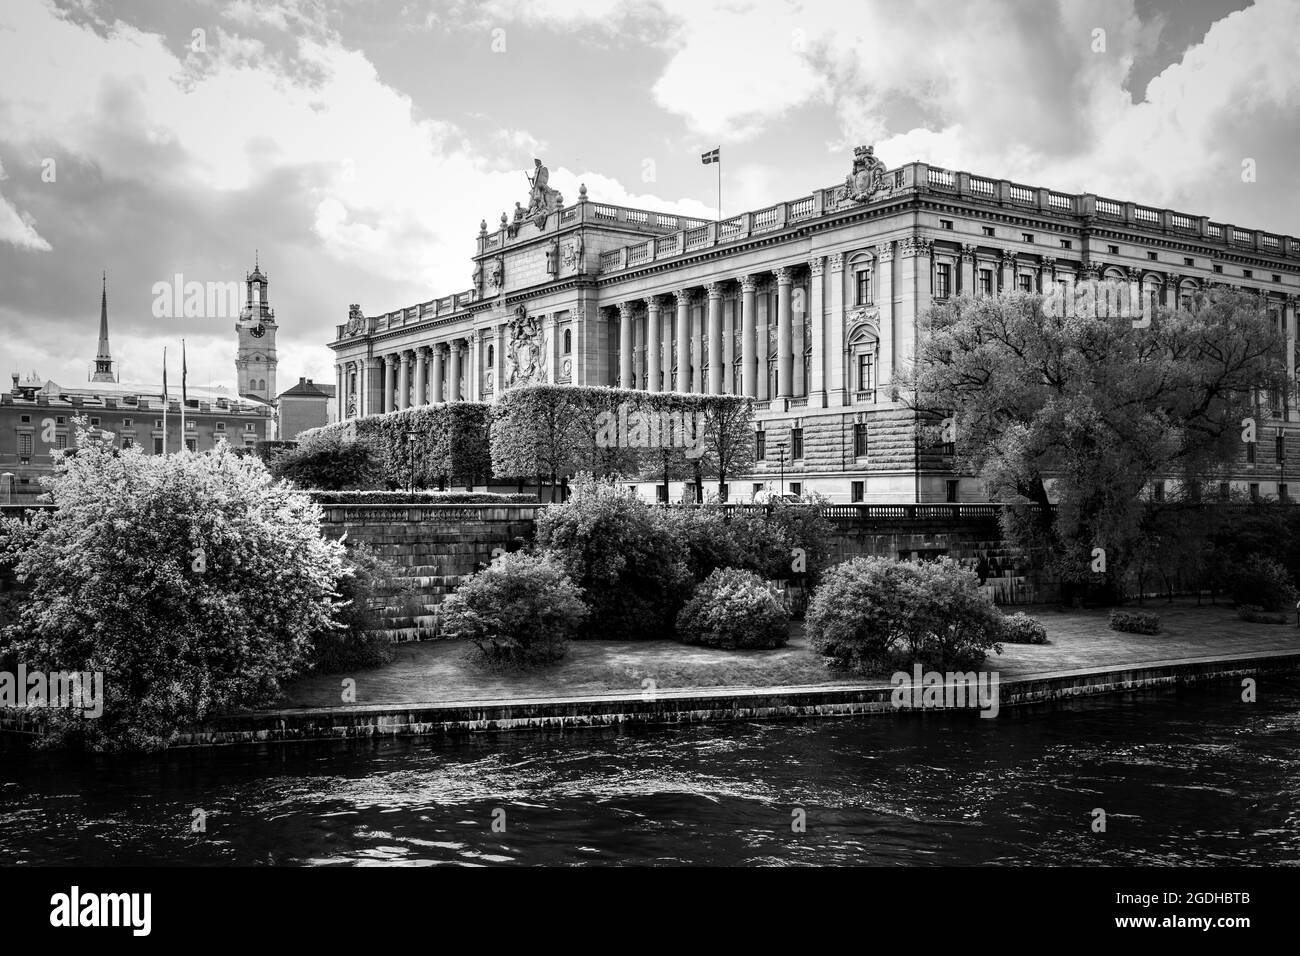 Sveriges riksdag - Parlement de Suède à Stockholm. Photographie en noir et blanc Banque D'Images